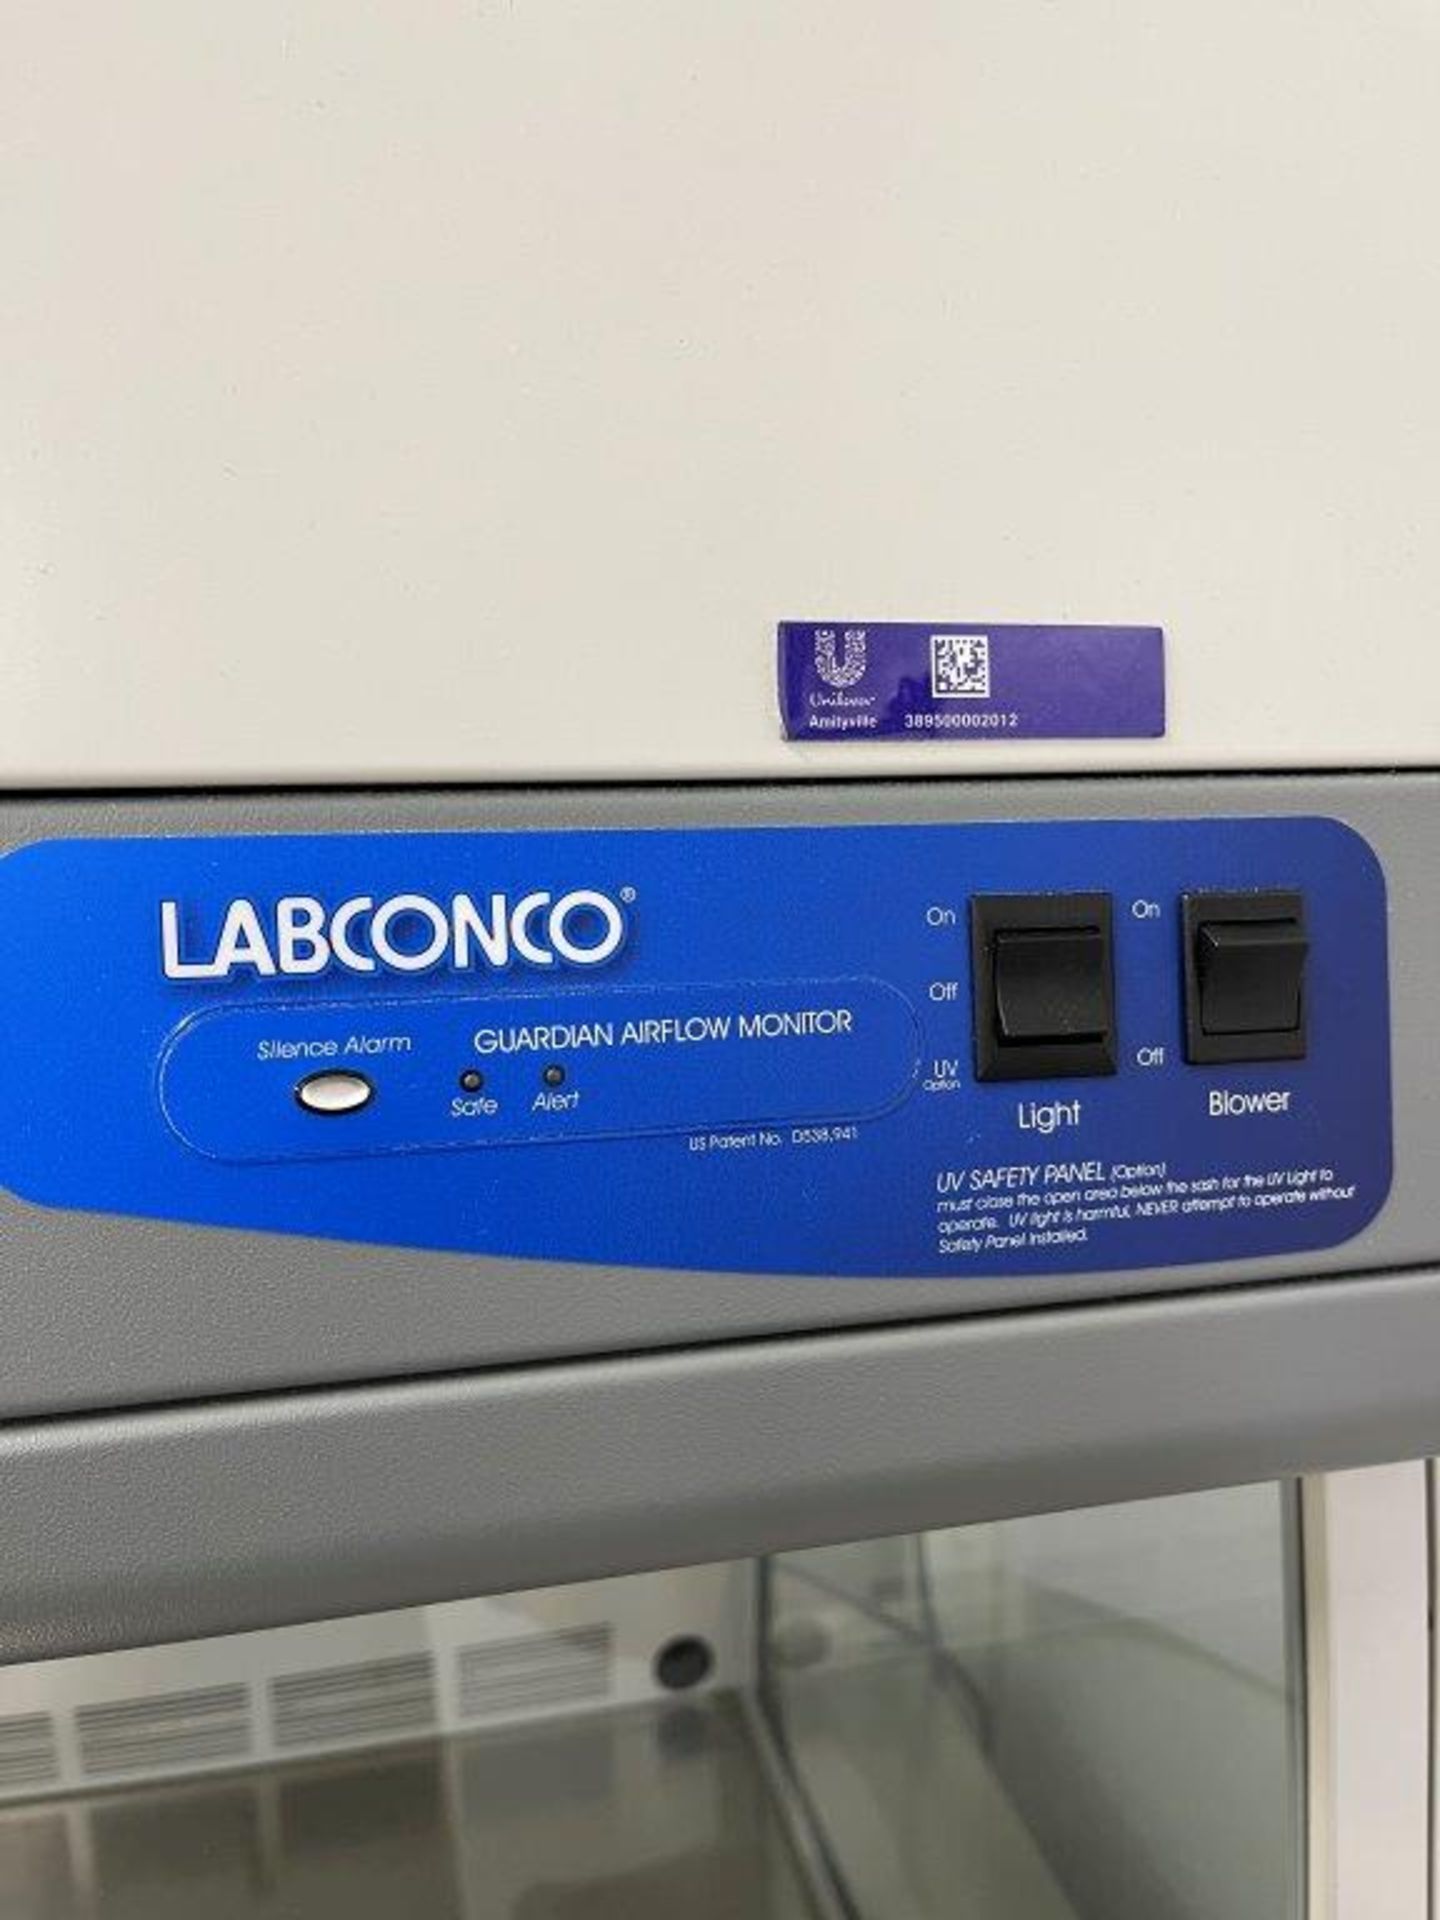 Labconco 3970403 Purifier 48" Bench Top PCR Enclosure - Image 2 of 2